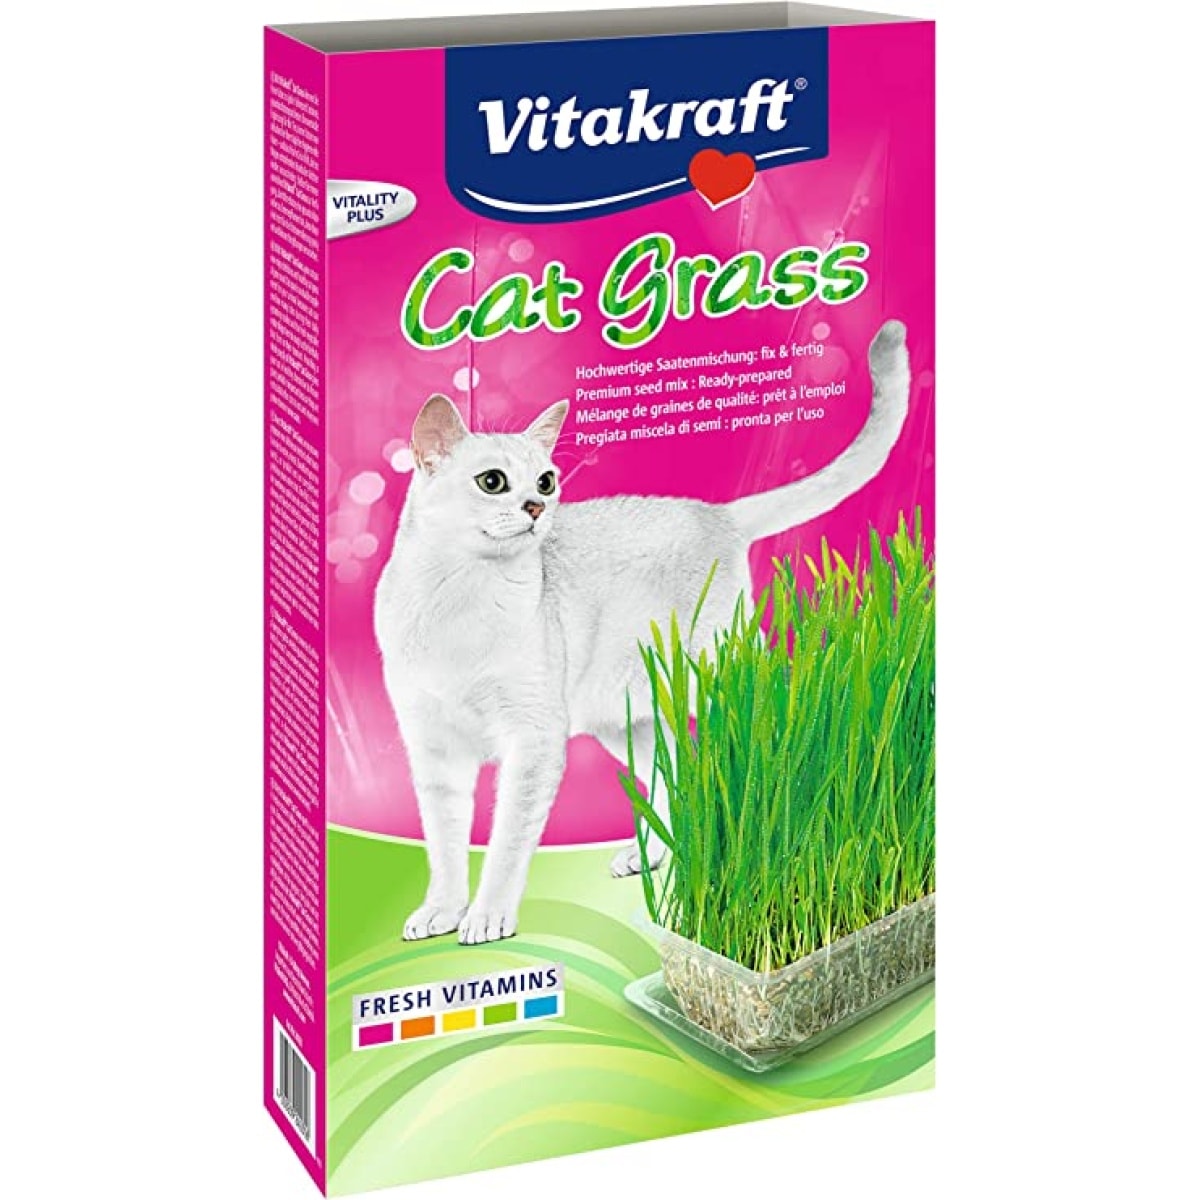 Vitakraft Cat Grass Main Image